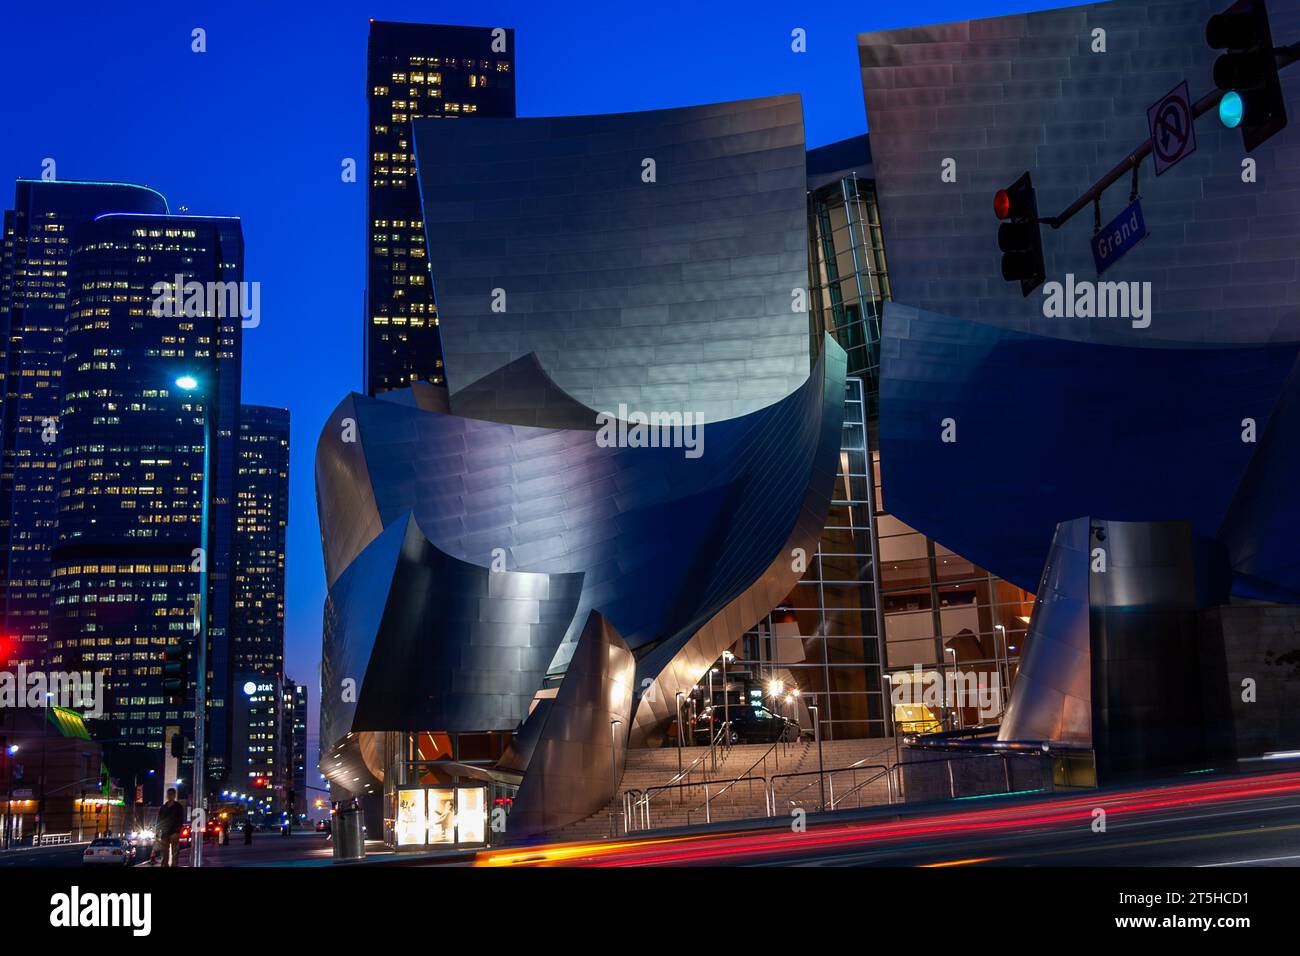 La lumière commence à jouer sur les courbes métalliques du Walt Disney concert Hall de Frank Gehry dans le centre-ville de Los Angeles, Californie, États-Unis. Banque D'Images